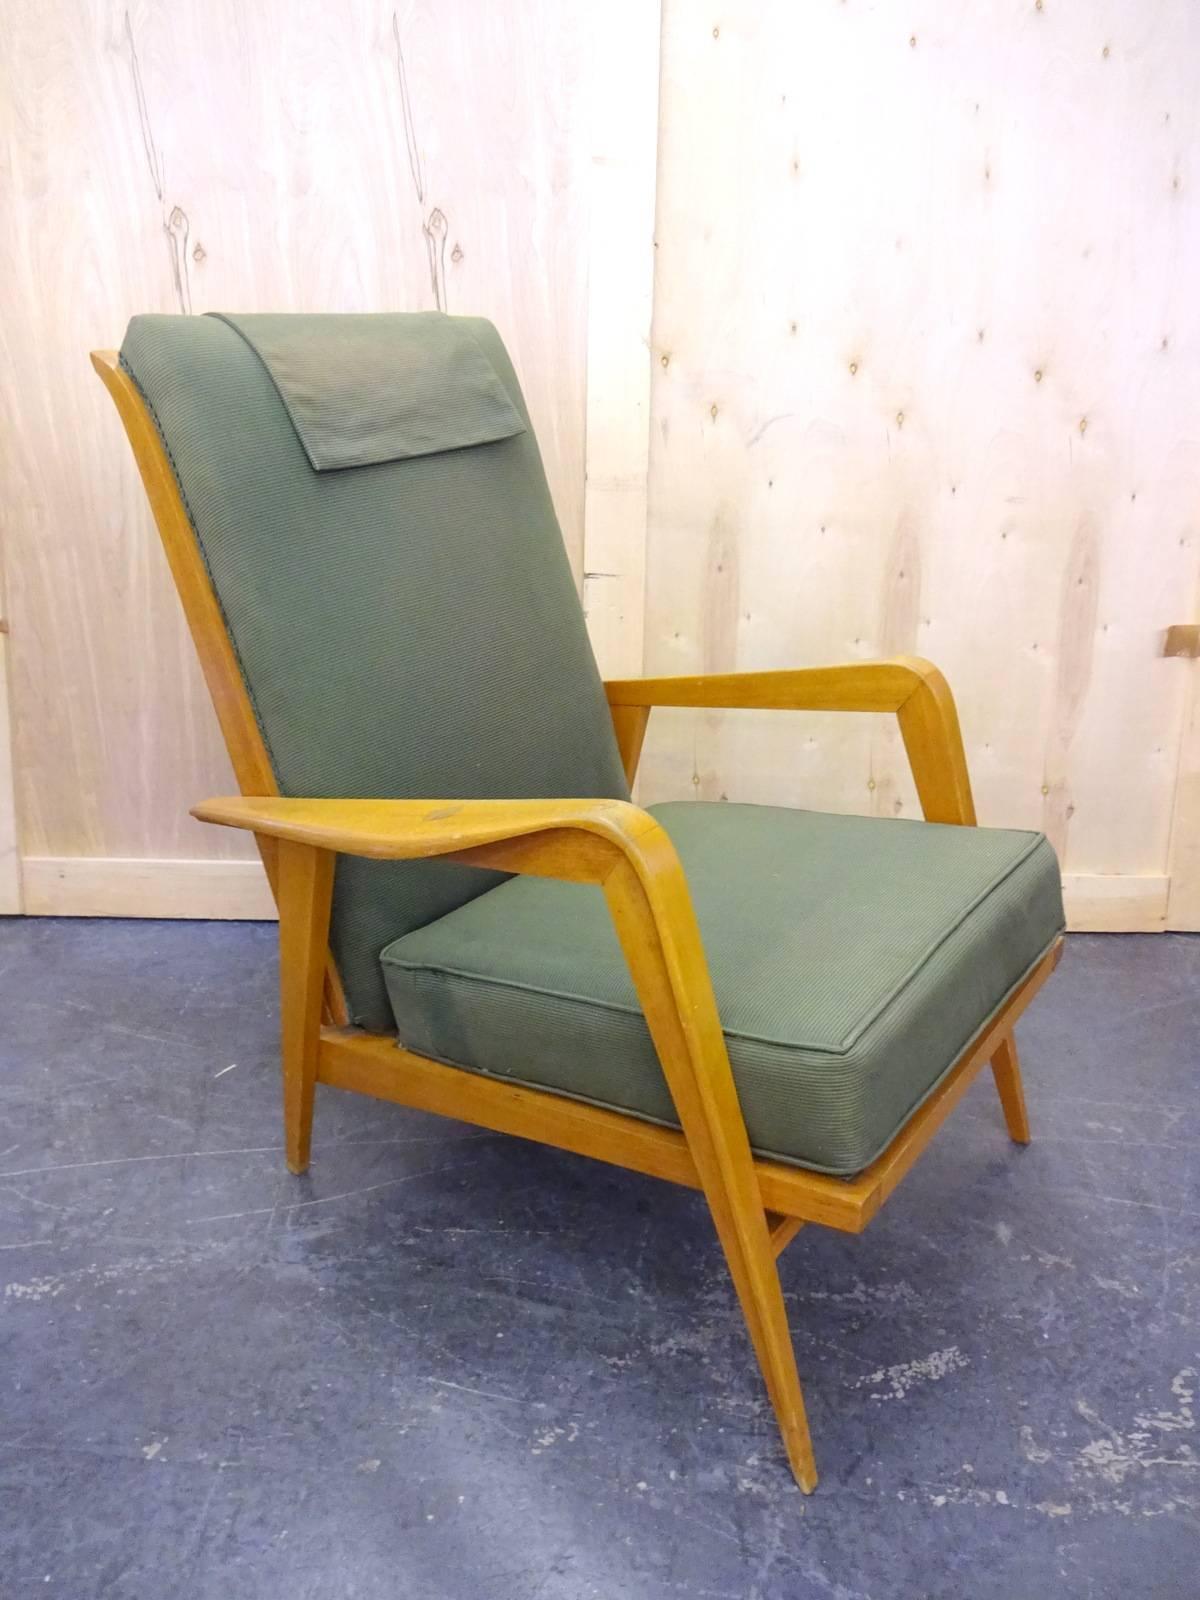 Paire de chaises françaises des années 1950 en état d'origine. 
Situé à Brooklyn.